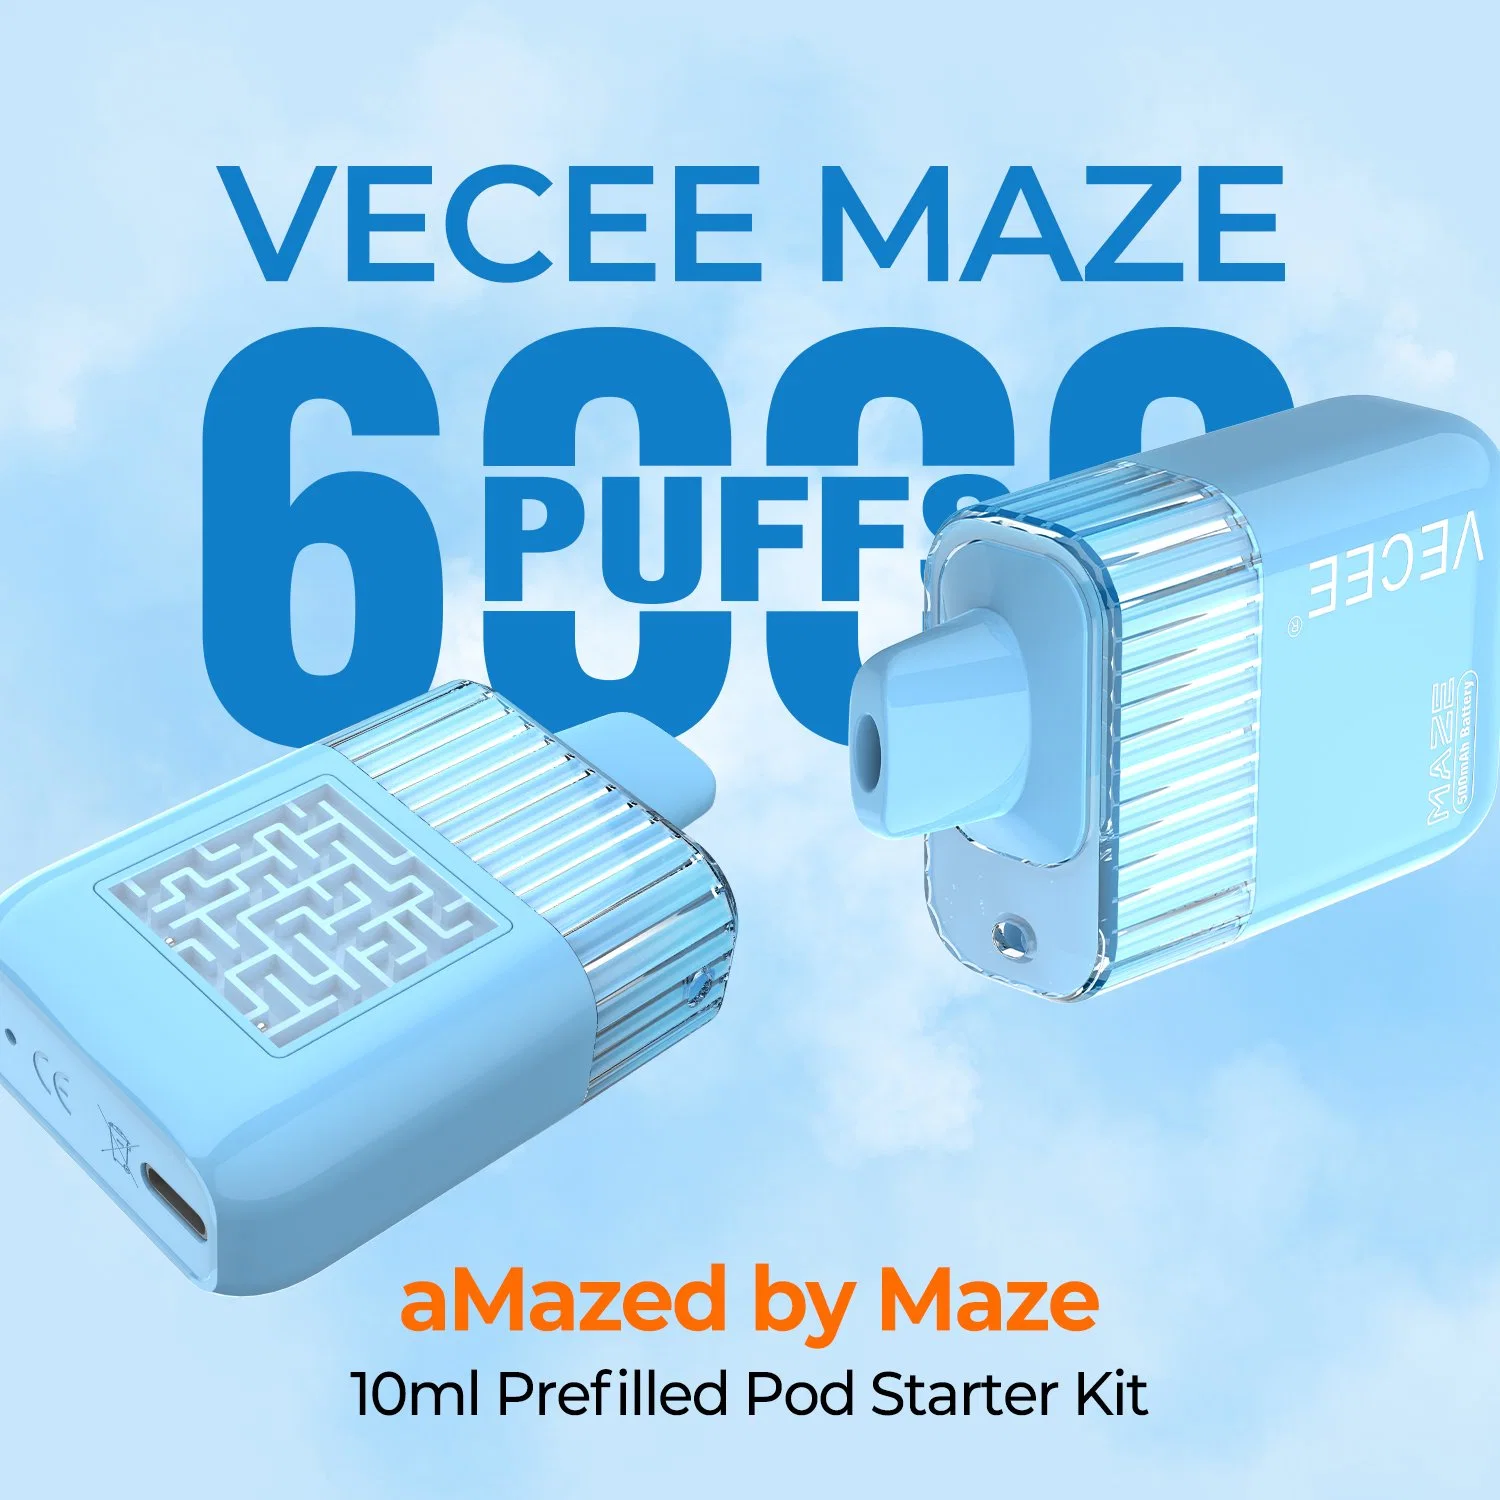 Vecee-Maze Shenzhen Disposable/Chargeable Electronic Cigarette 500mAh Rechargeable 6000 Puffs 10ml E Liquid Wholesale/Supplier Vaporizer Mesh Coil Disposable/Chargeable Vape Pen